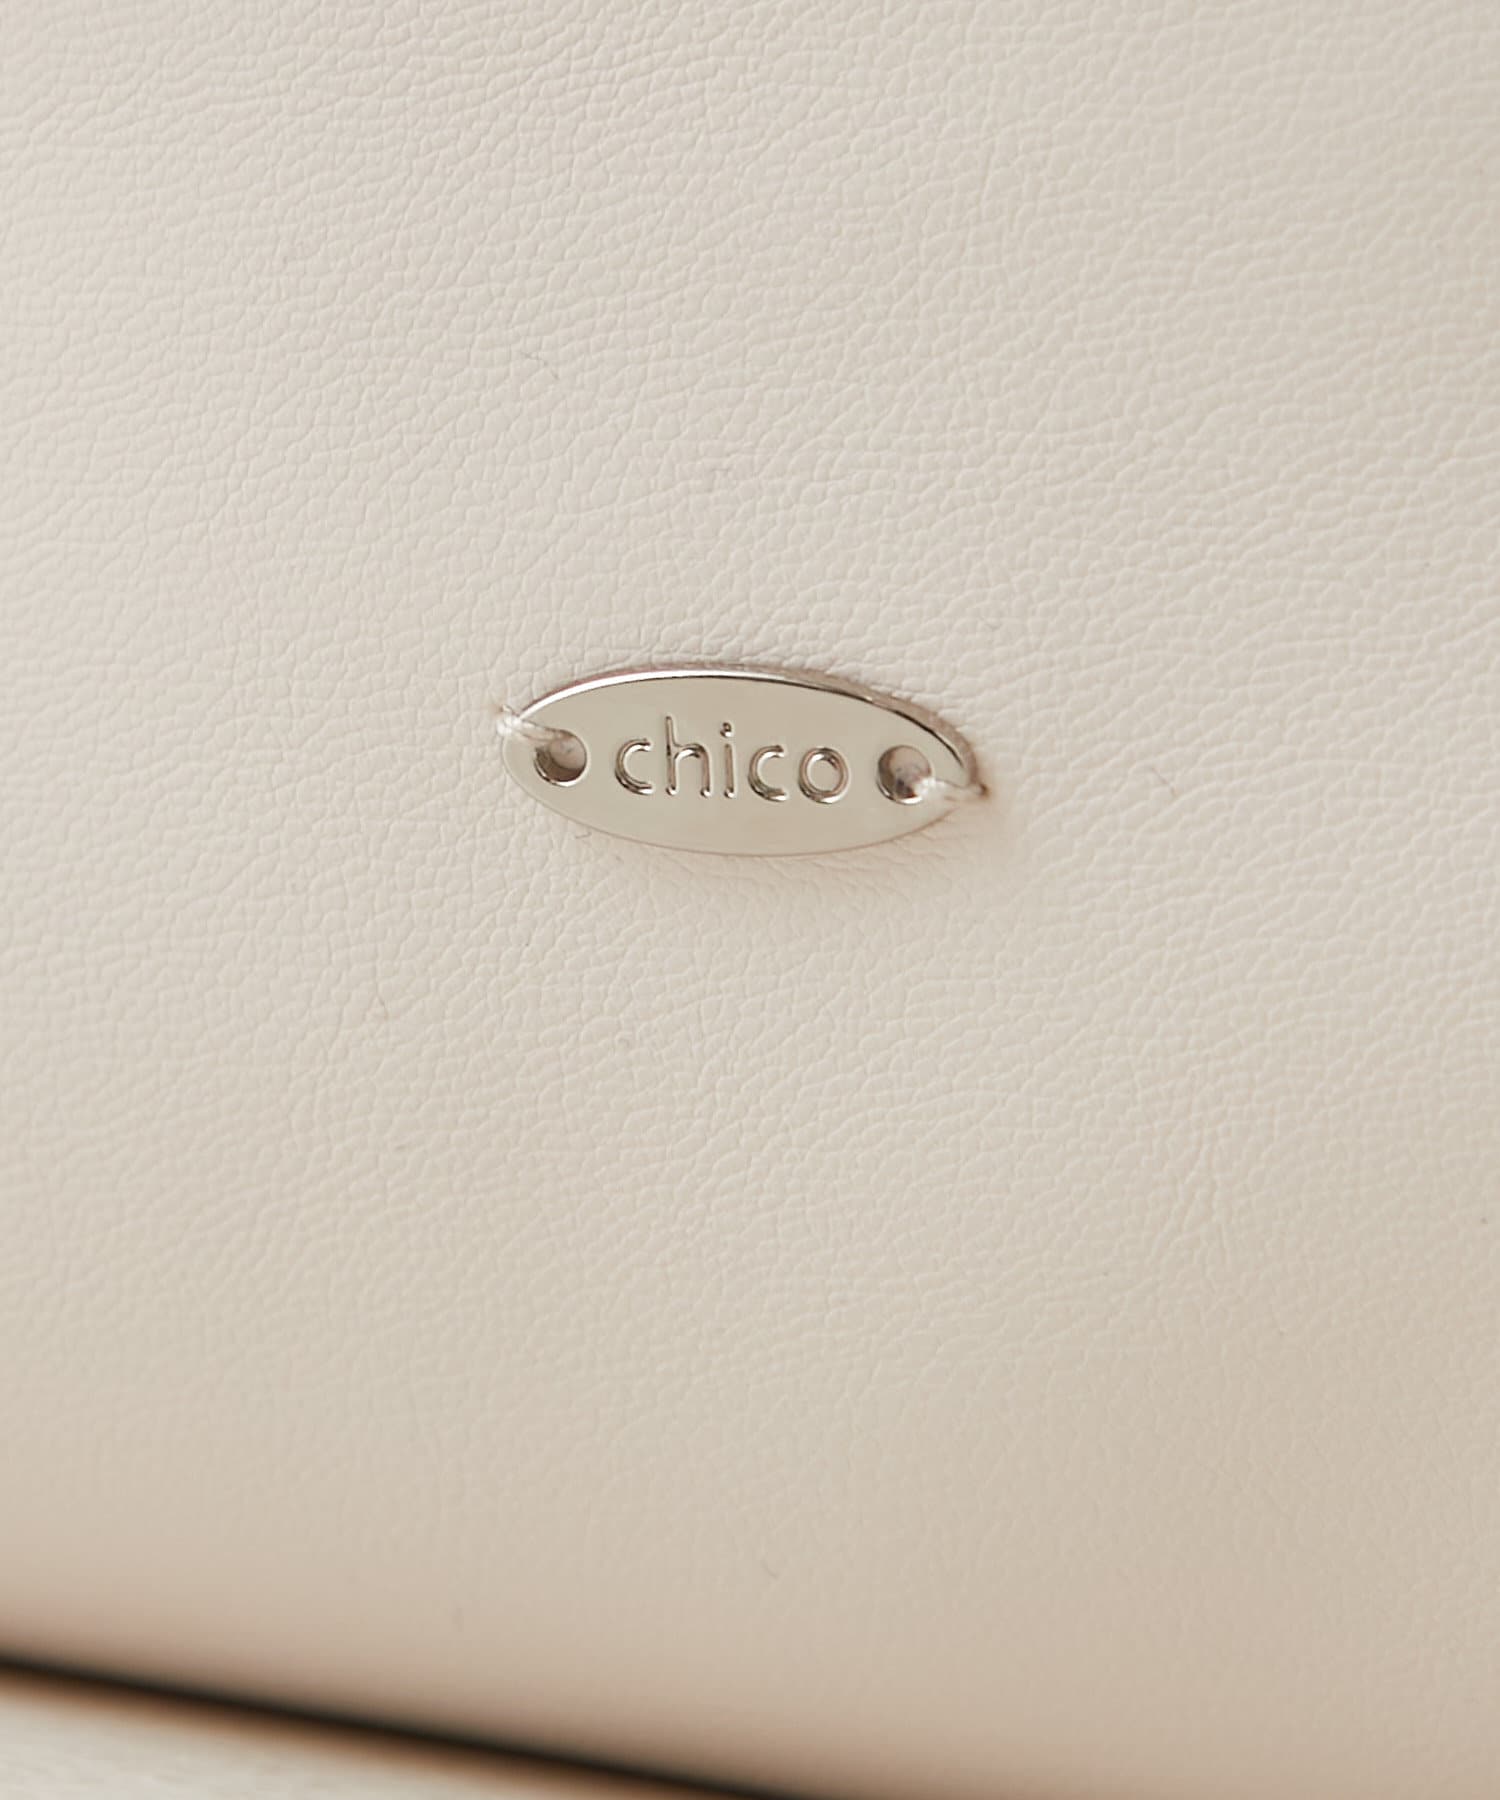 Chico(チコ) 【新色追加】スマホケース付ビックベルトトート